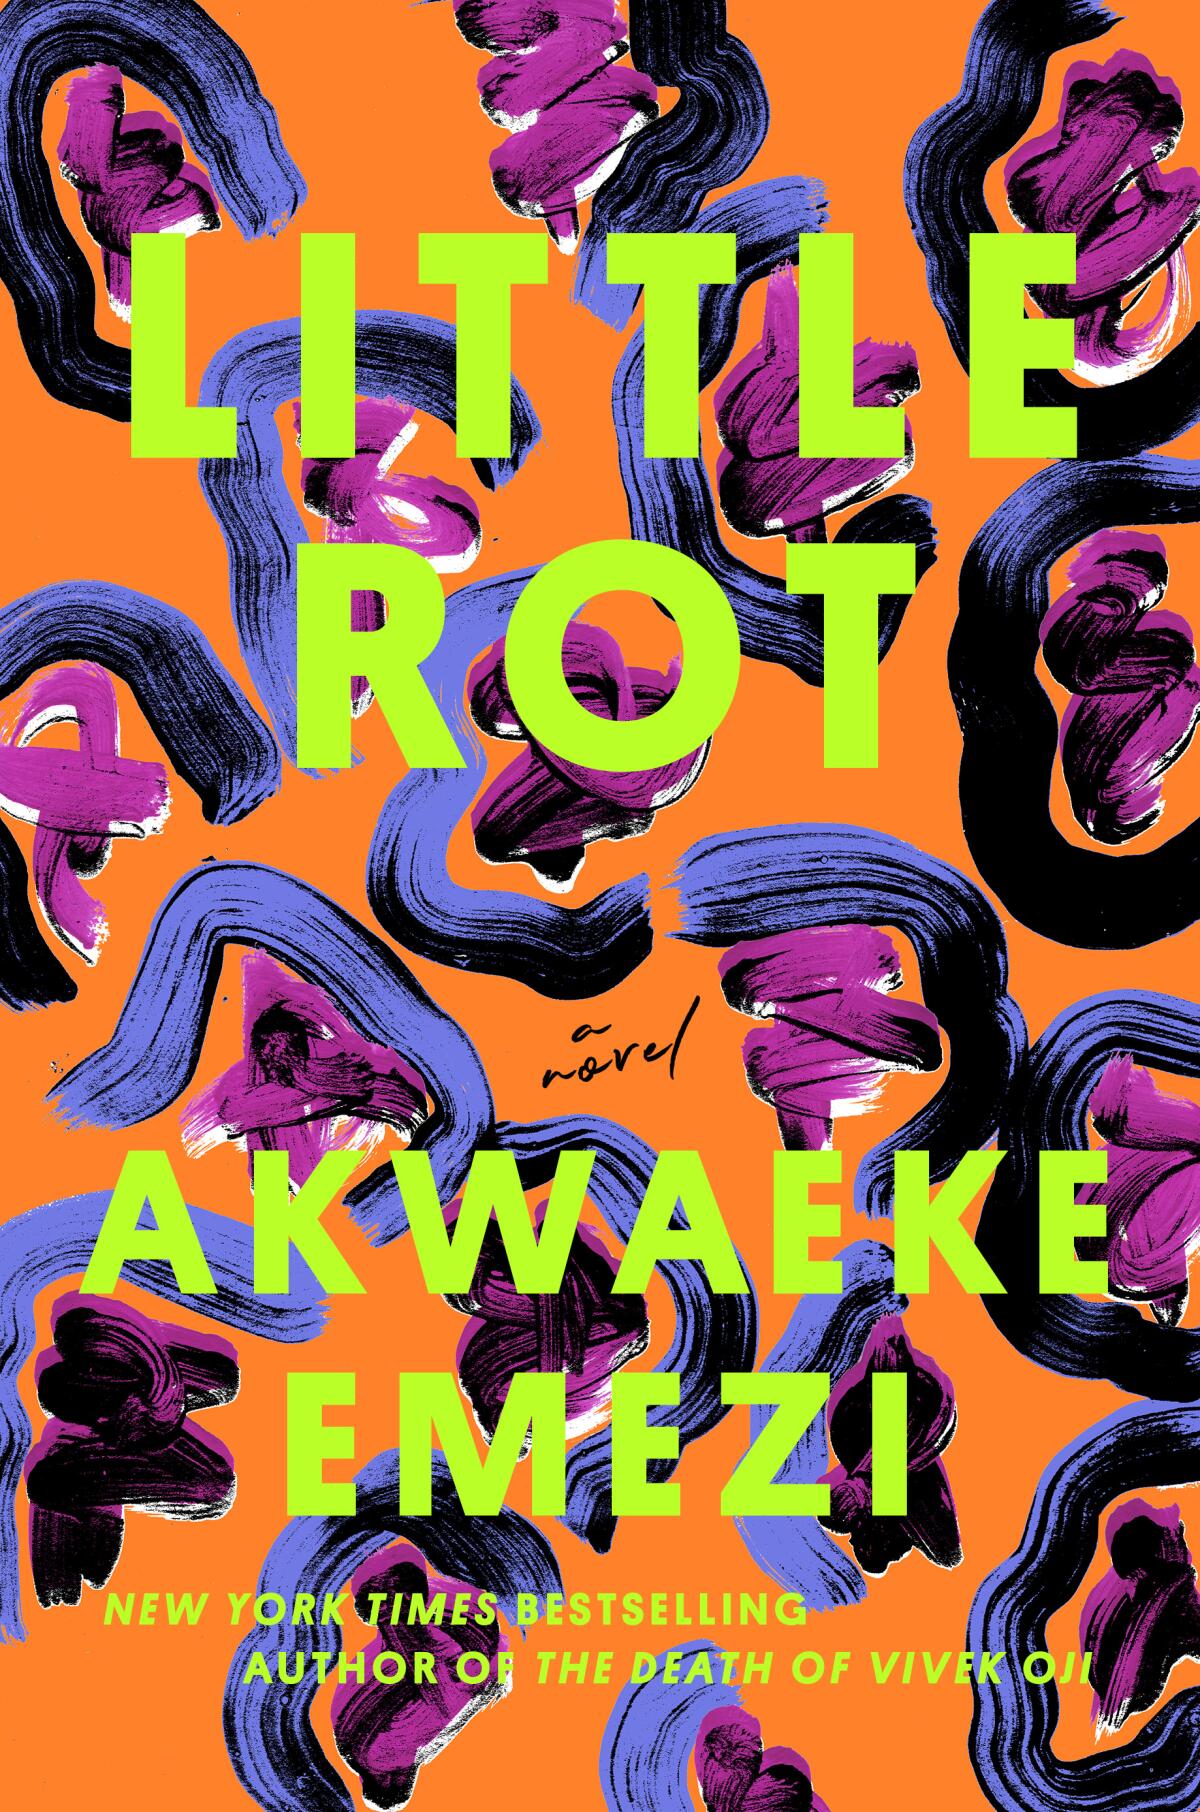 "Small rot" by Akwaeke Emezi